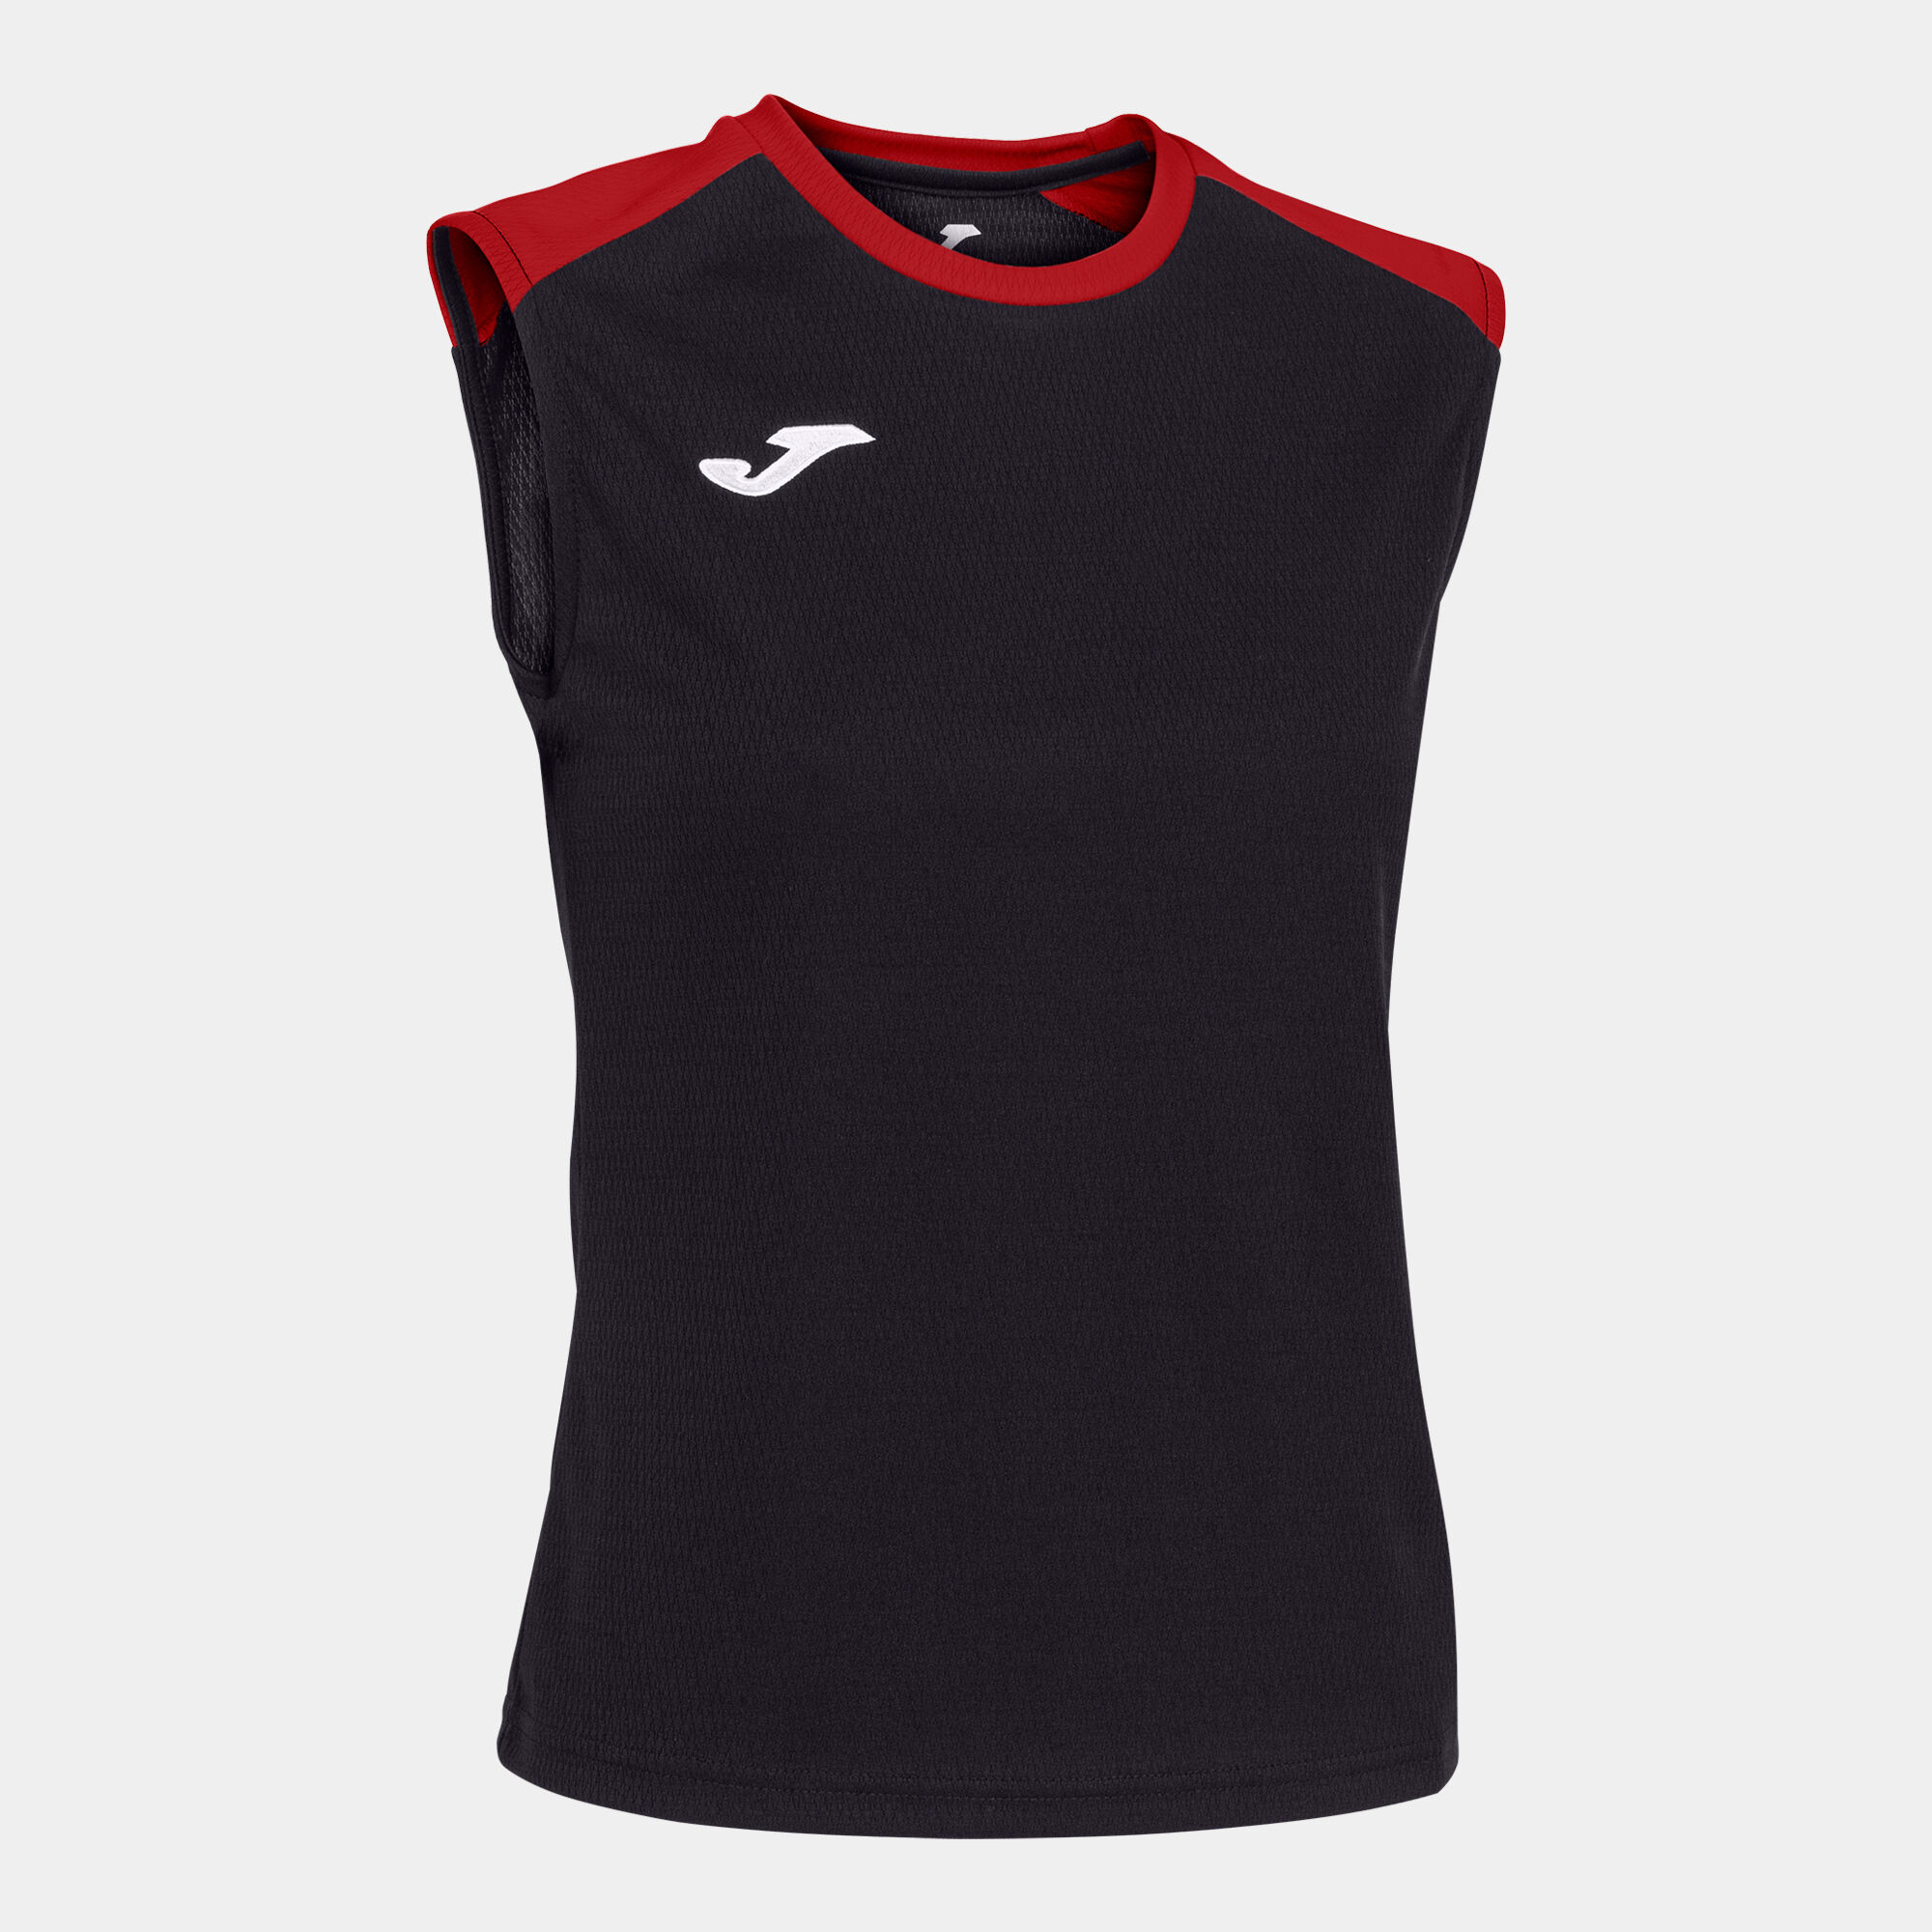 T-shirt de alça mulher Eco Championship preto vermelho